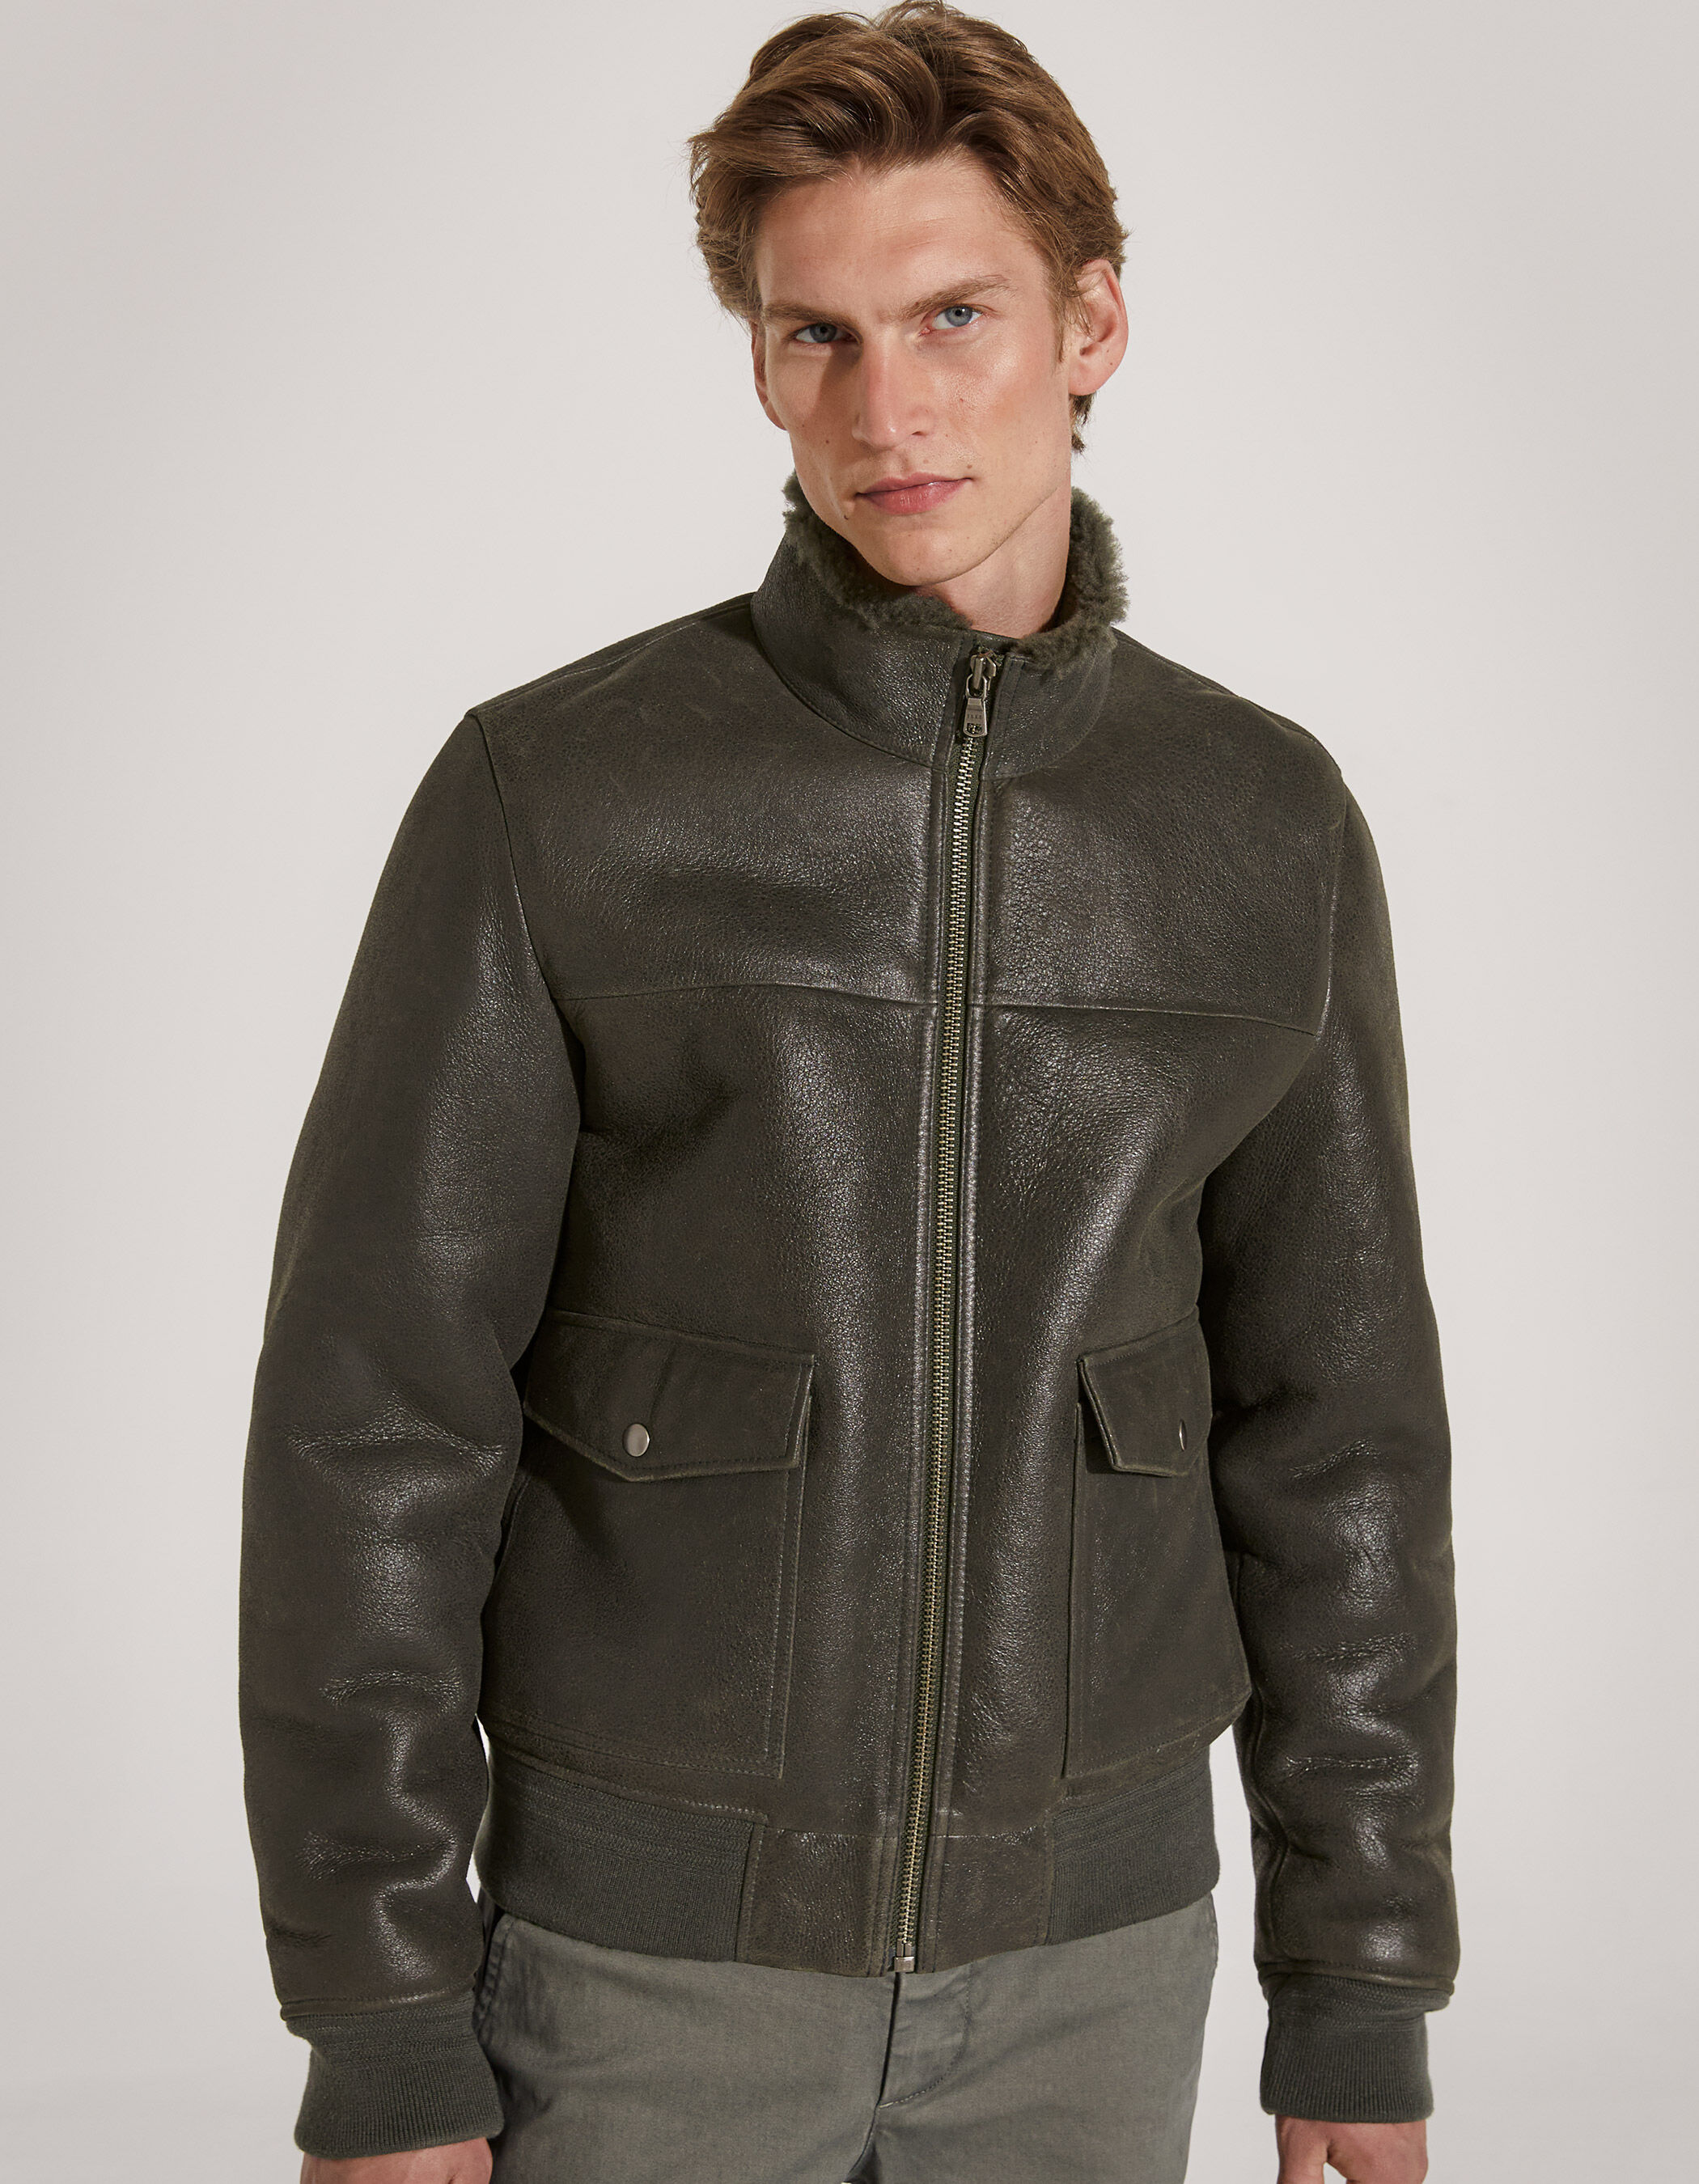 7,915円Stand Collar Leather Jacket Blouson type